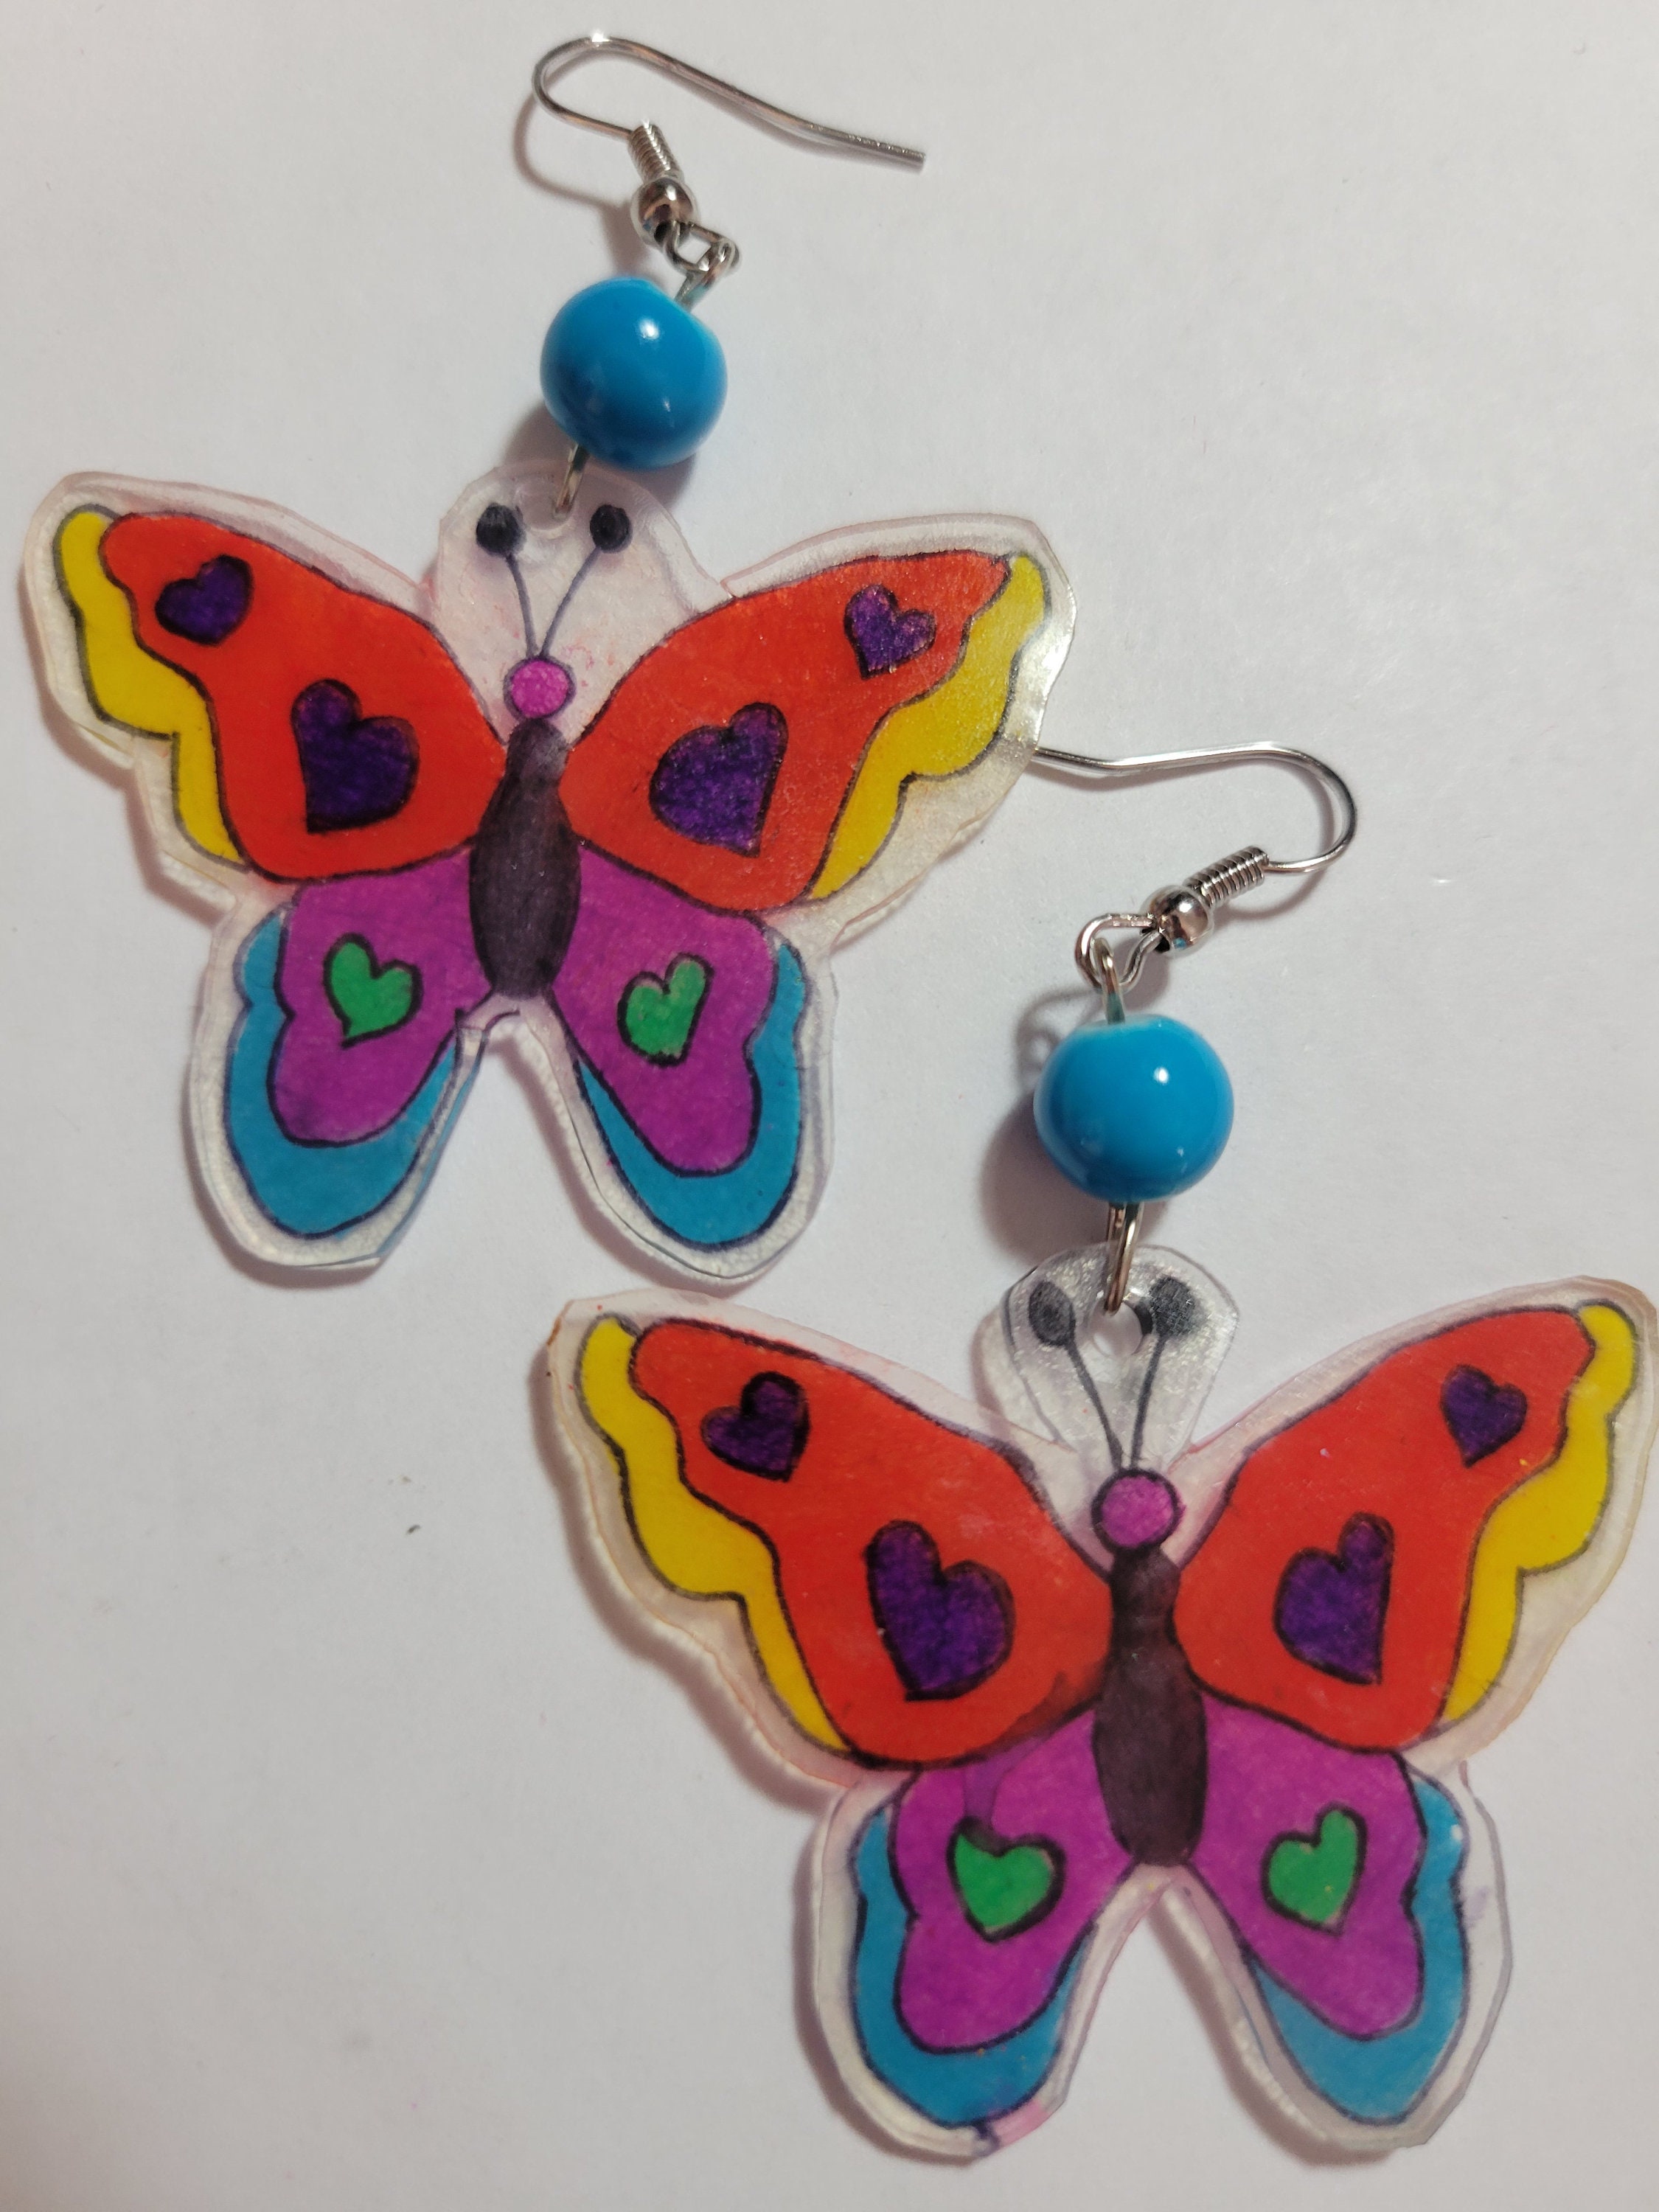 Butterfly Craft Idea - Shrinky Dink Suncatchers - Cutesy Crafts